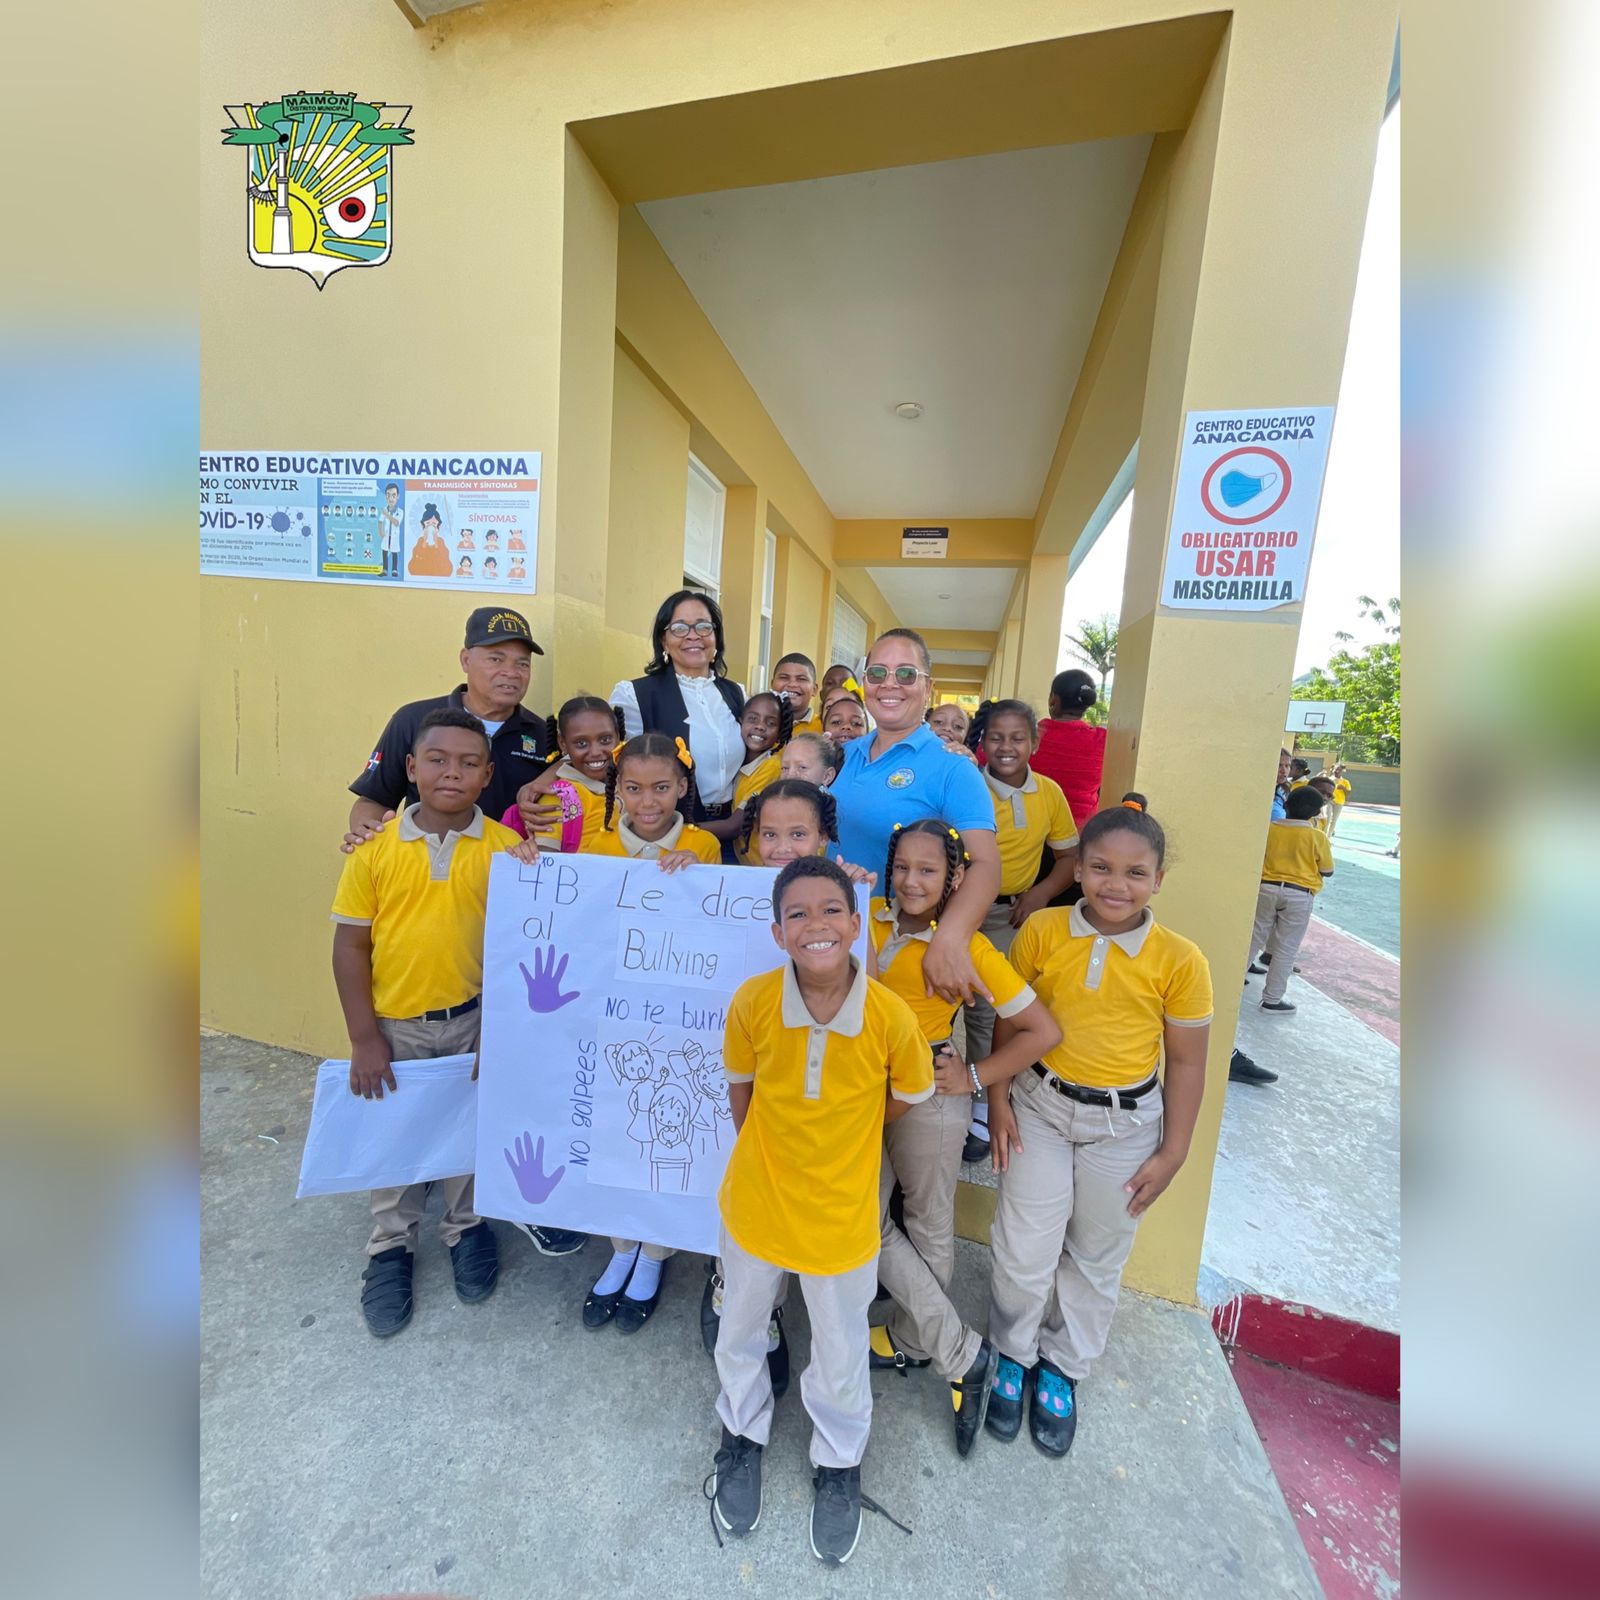 La alcaldesa distrital de Maimón, Elba Tineo, participó la mañana de este viernes en una actividad organizada por la escuela Amalia Gómez en contra del Bullying.